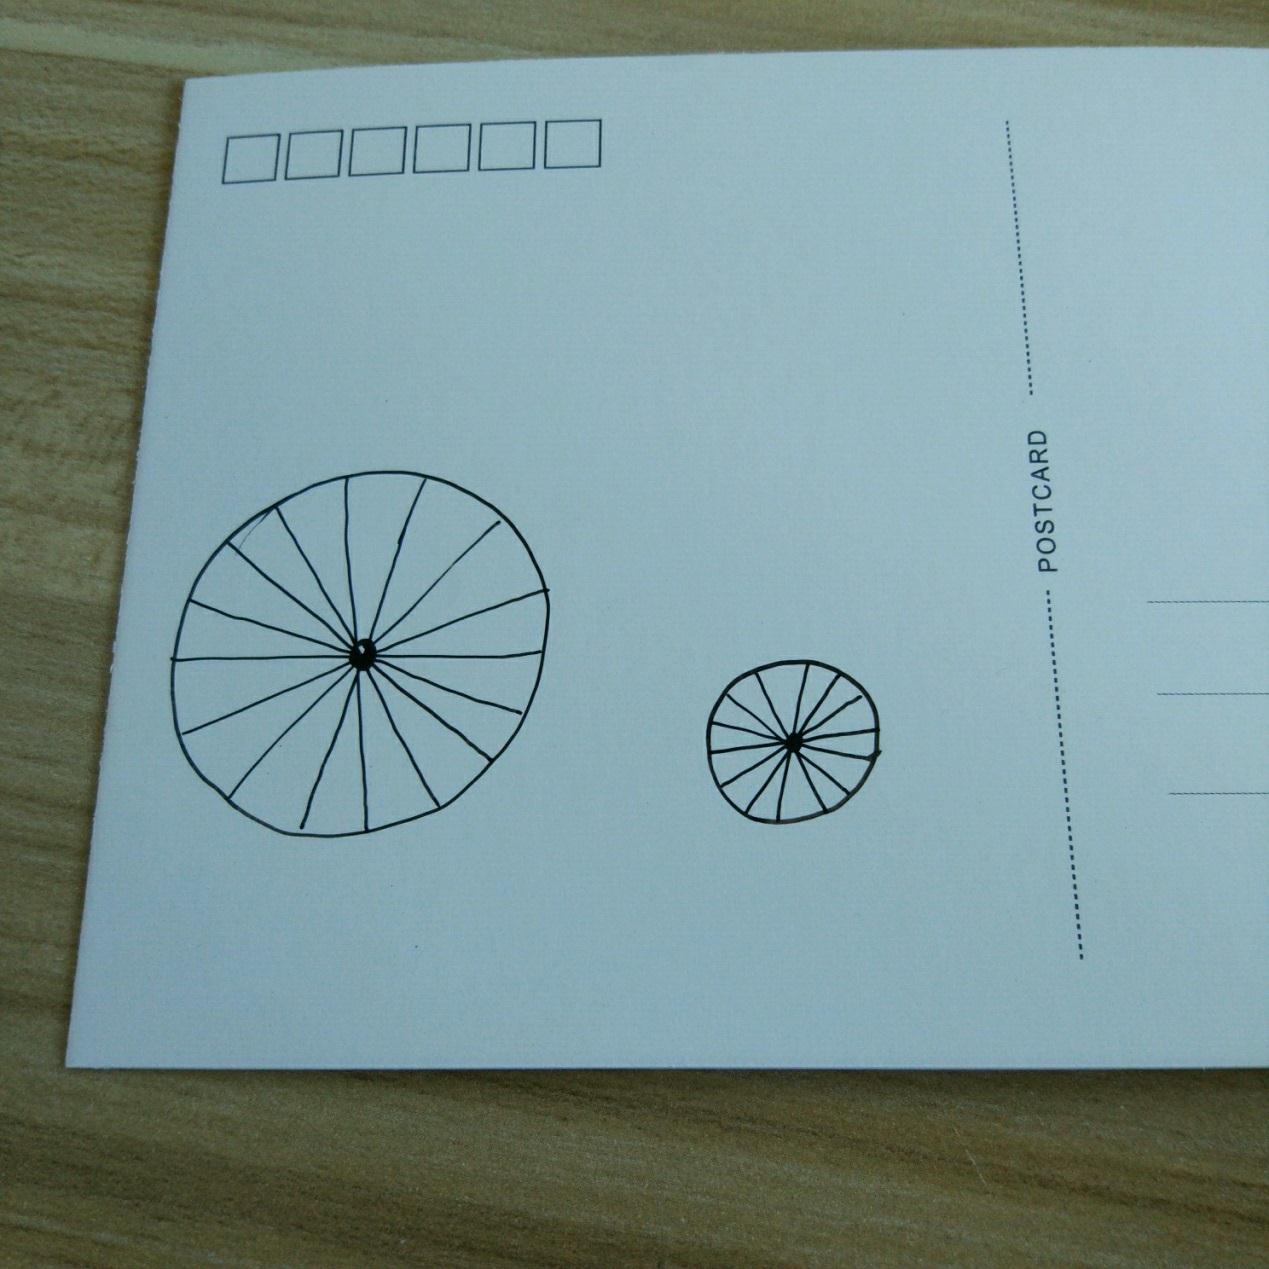 宋宋教你画简单漂亮的手绘明信片装饰画―自行车